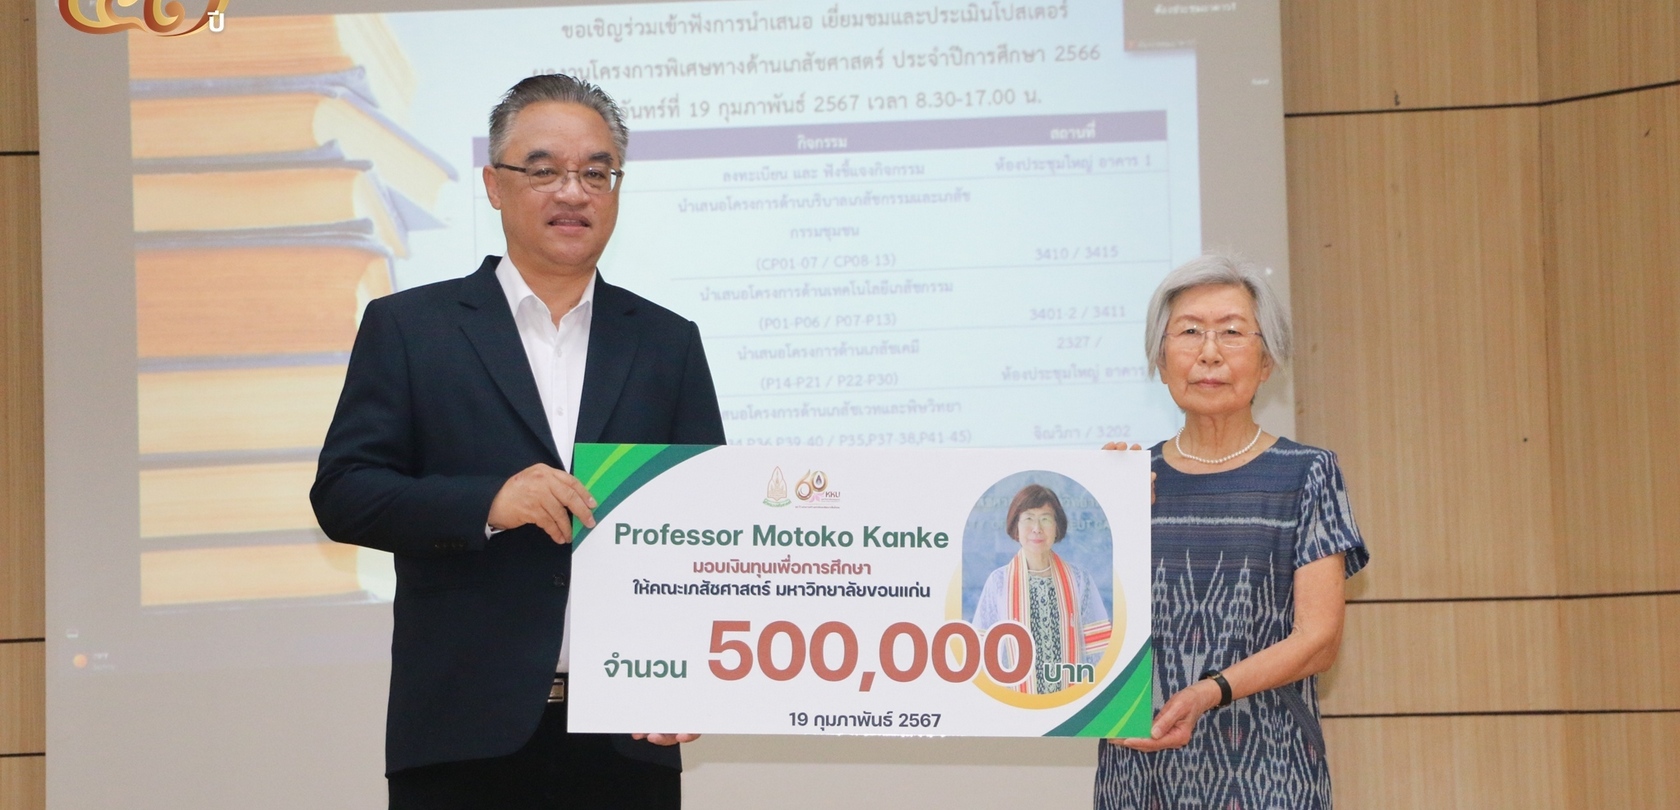 คณะเภสัชศาสตร์ ม.ขอนแก่น รับมอบเงินทุนเพื่อการศึกษา จาก Professor Motoko Kanke